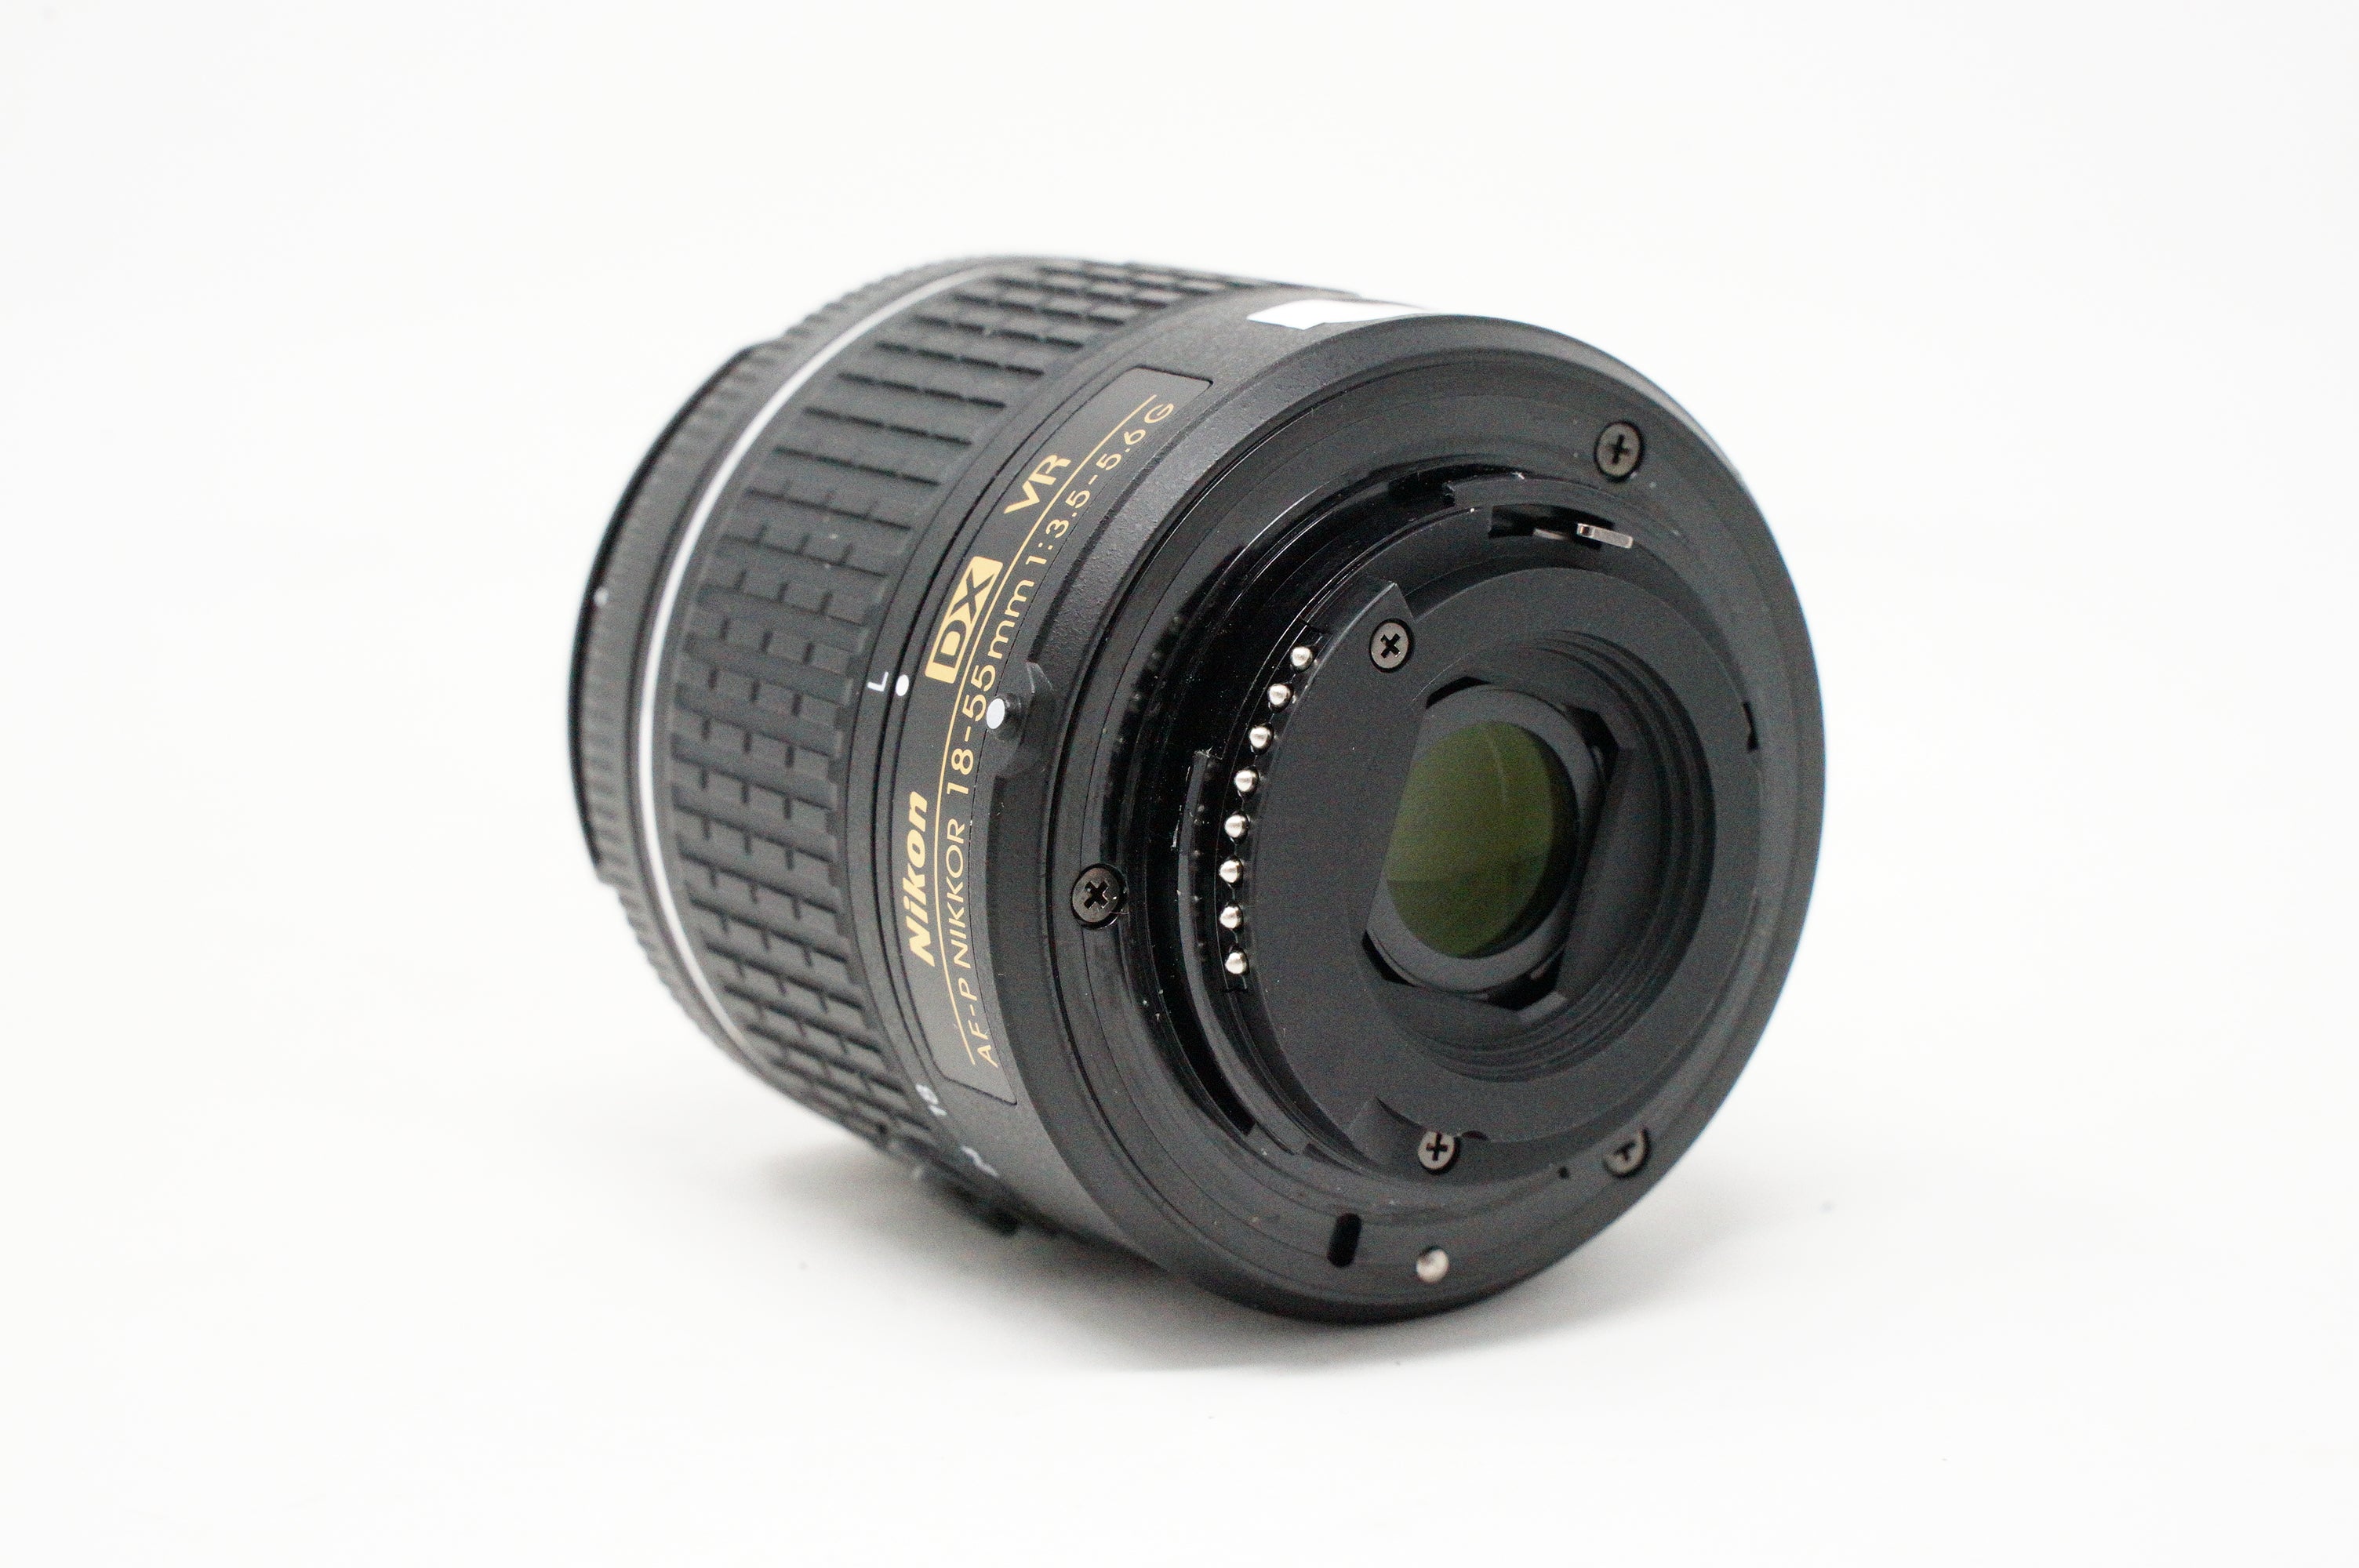 AF-P NIKKOR 18-55mm DX VR 【98%OFF!】 - レンズ(ズーム)